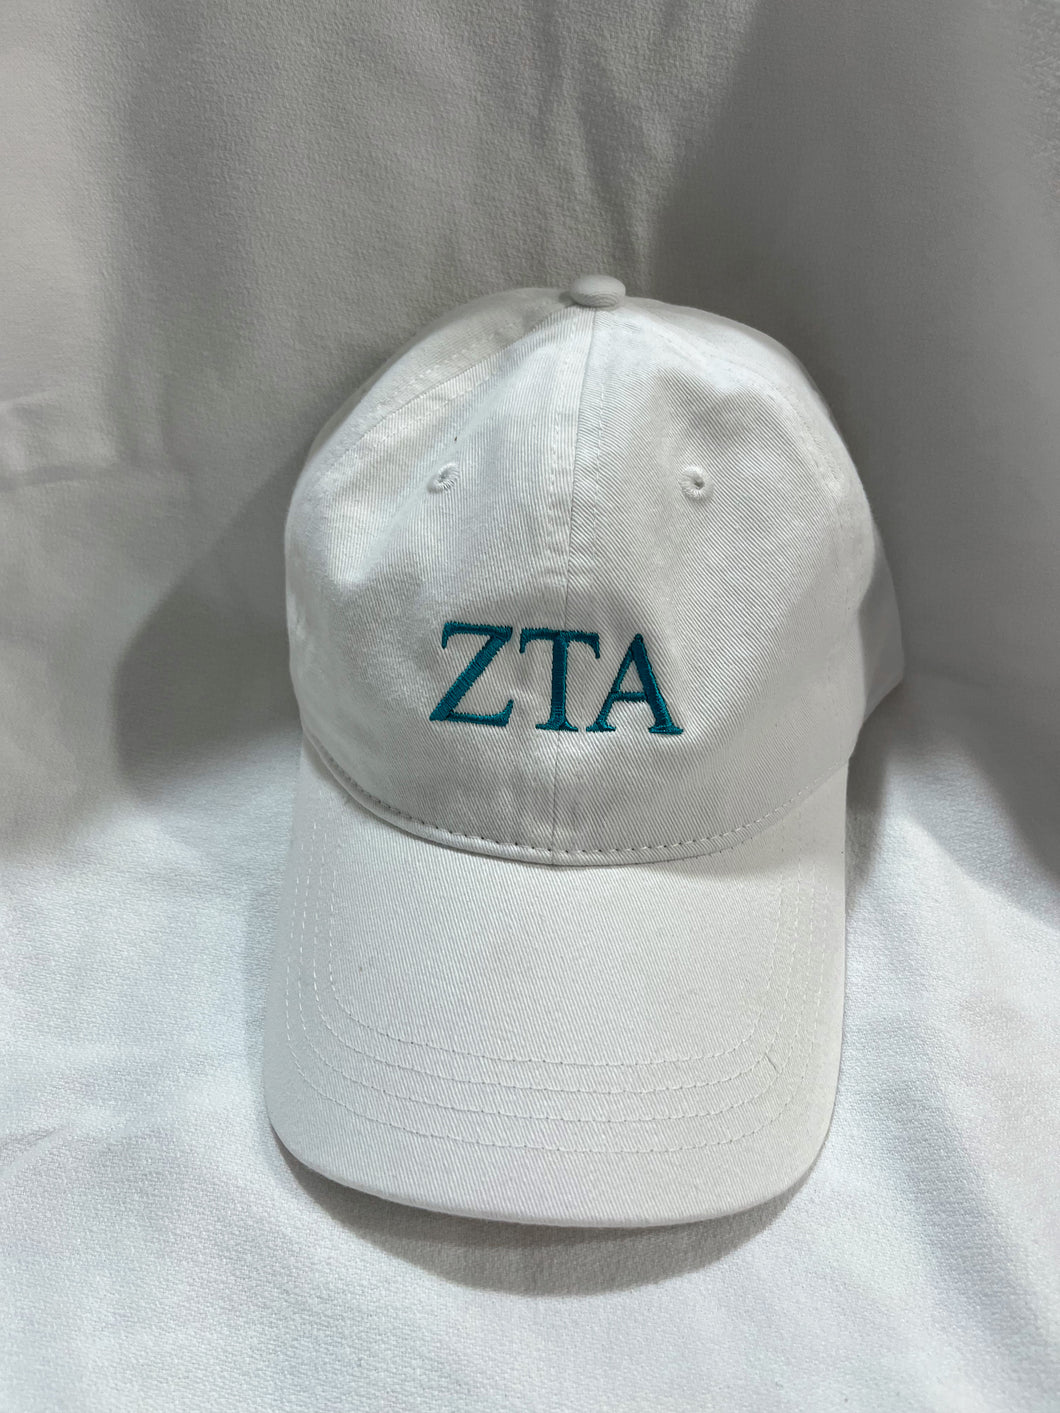 Zeta Tau Alpha Baseball Cap